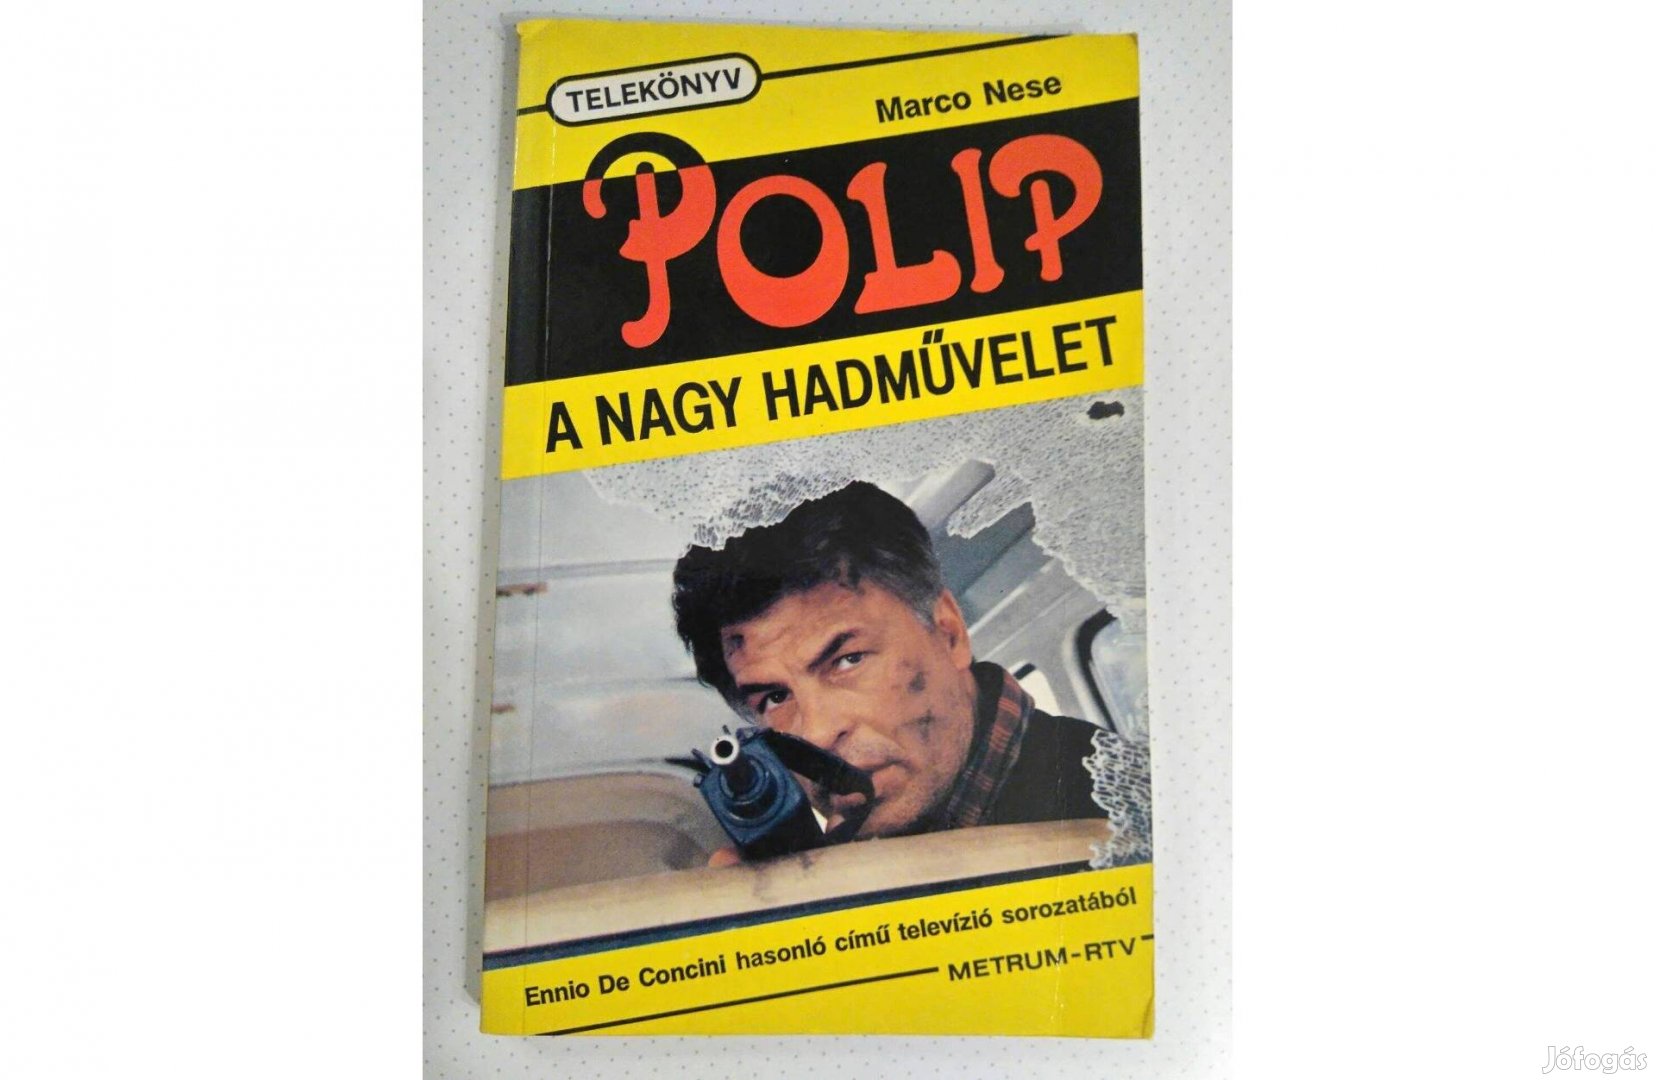 Marco Nese Polip ( telekönyv) eladó!